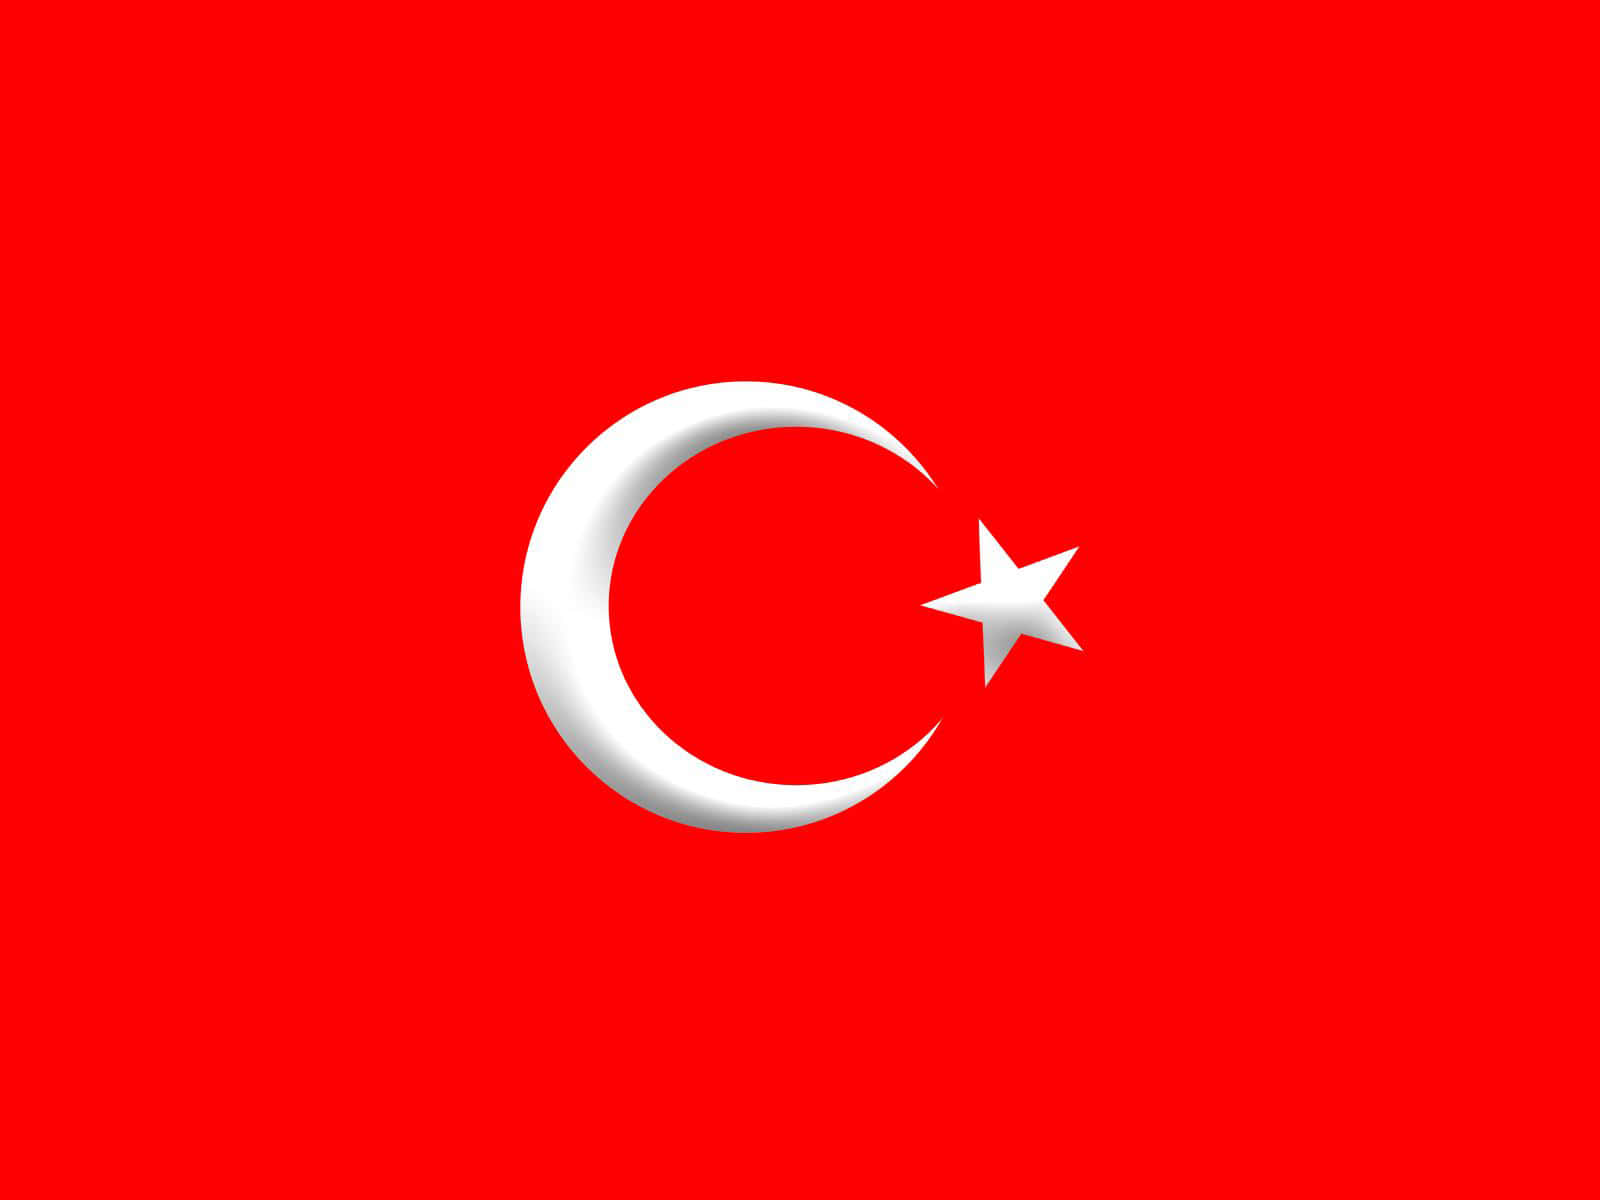 Flagetfra Tyrkiet På En Rød Baggrund.